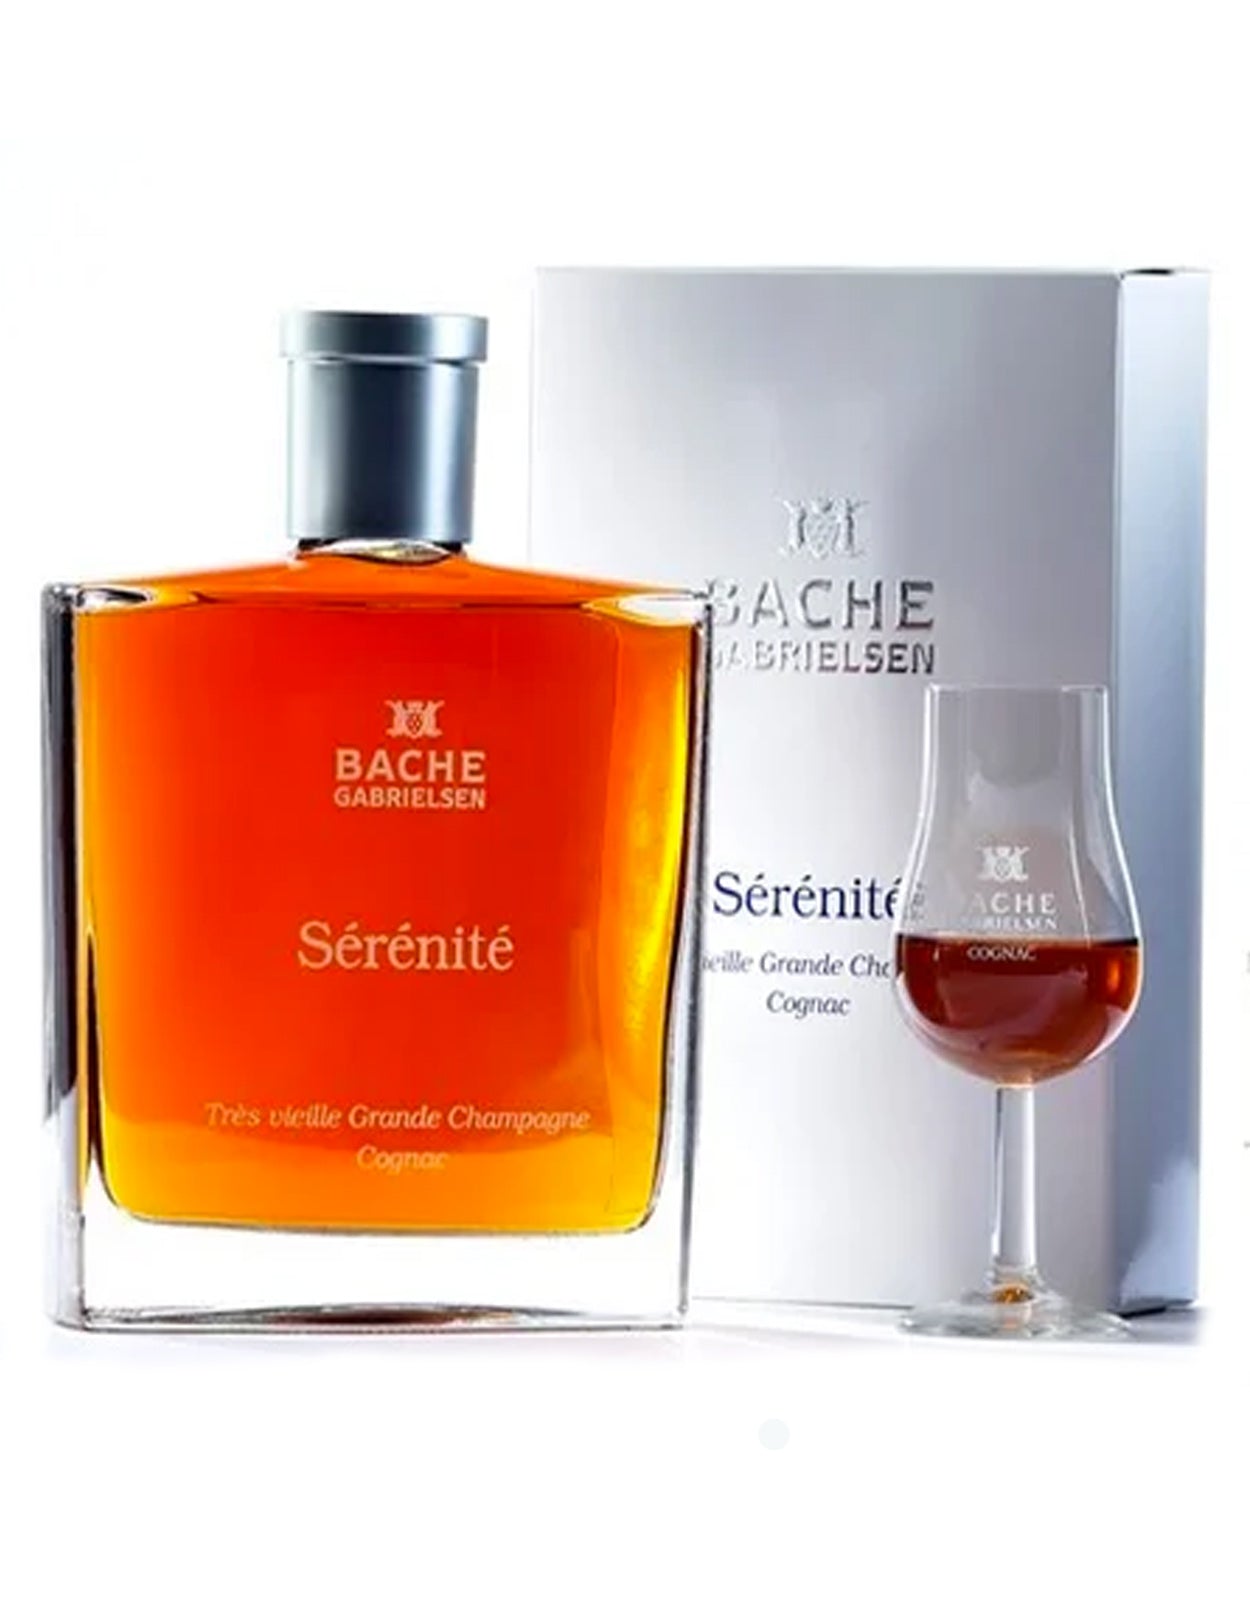 Bache Gabrielsen Reserve Serenite Tres Vieille Cognac